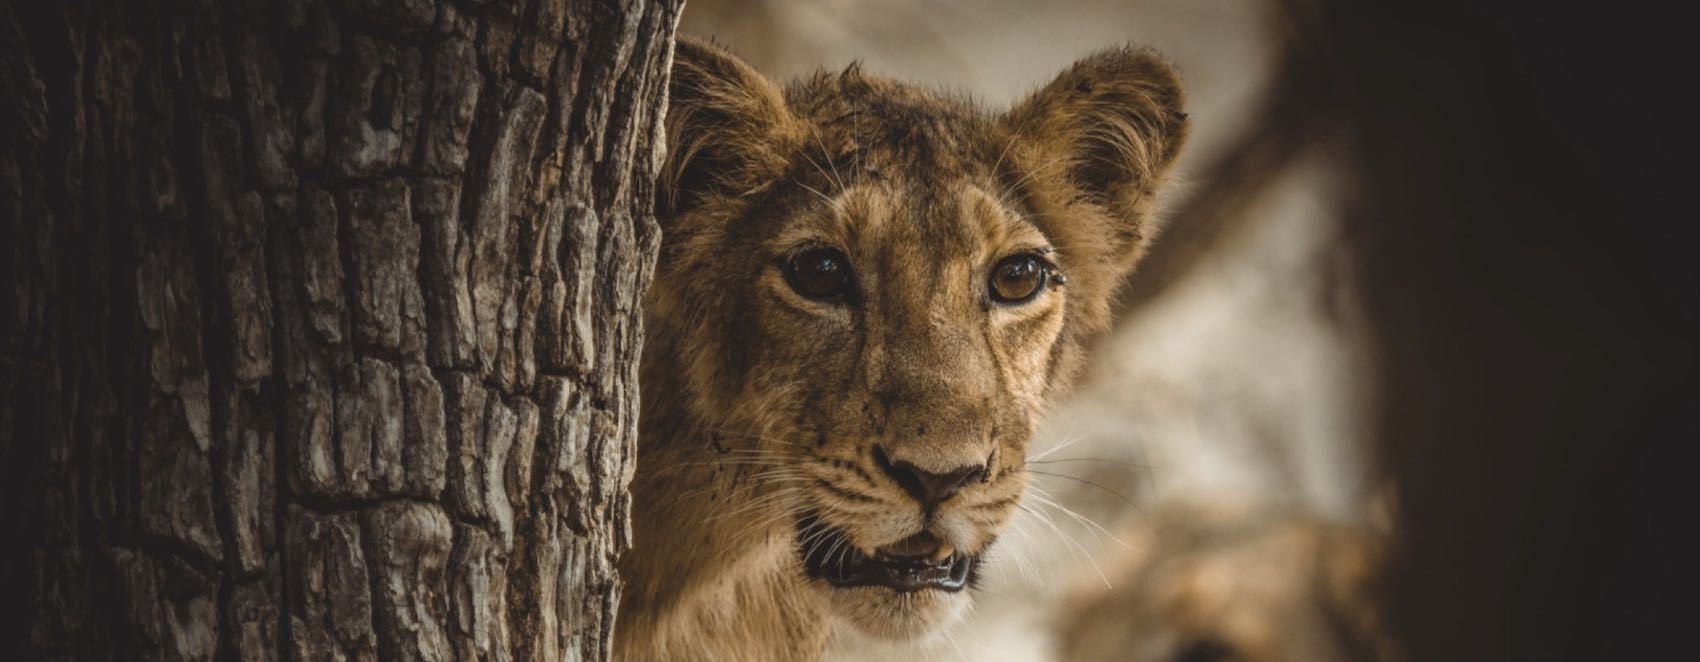 Lion dans un parc national en Inde